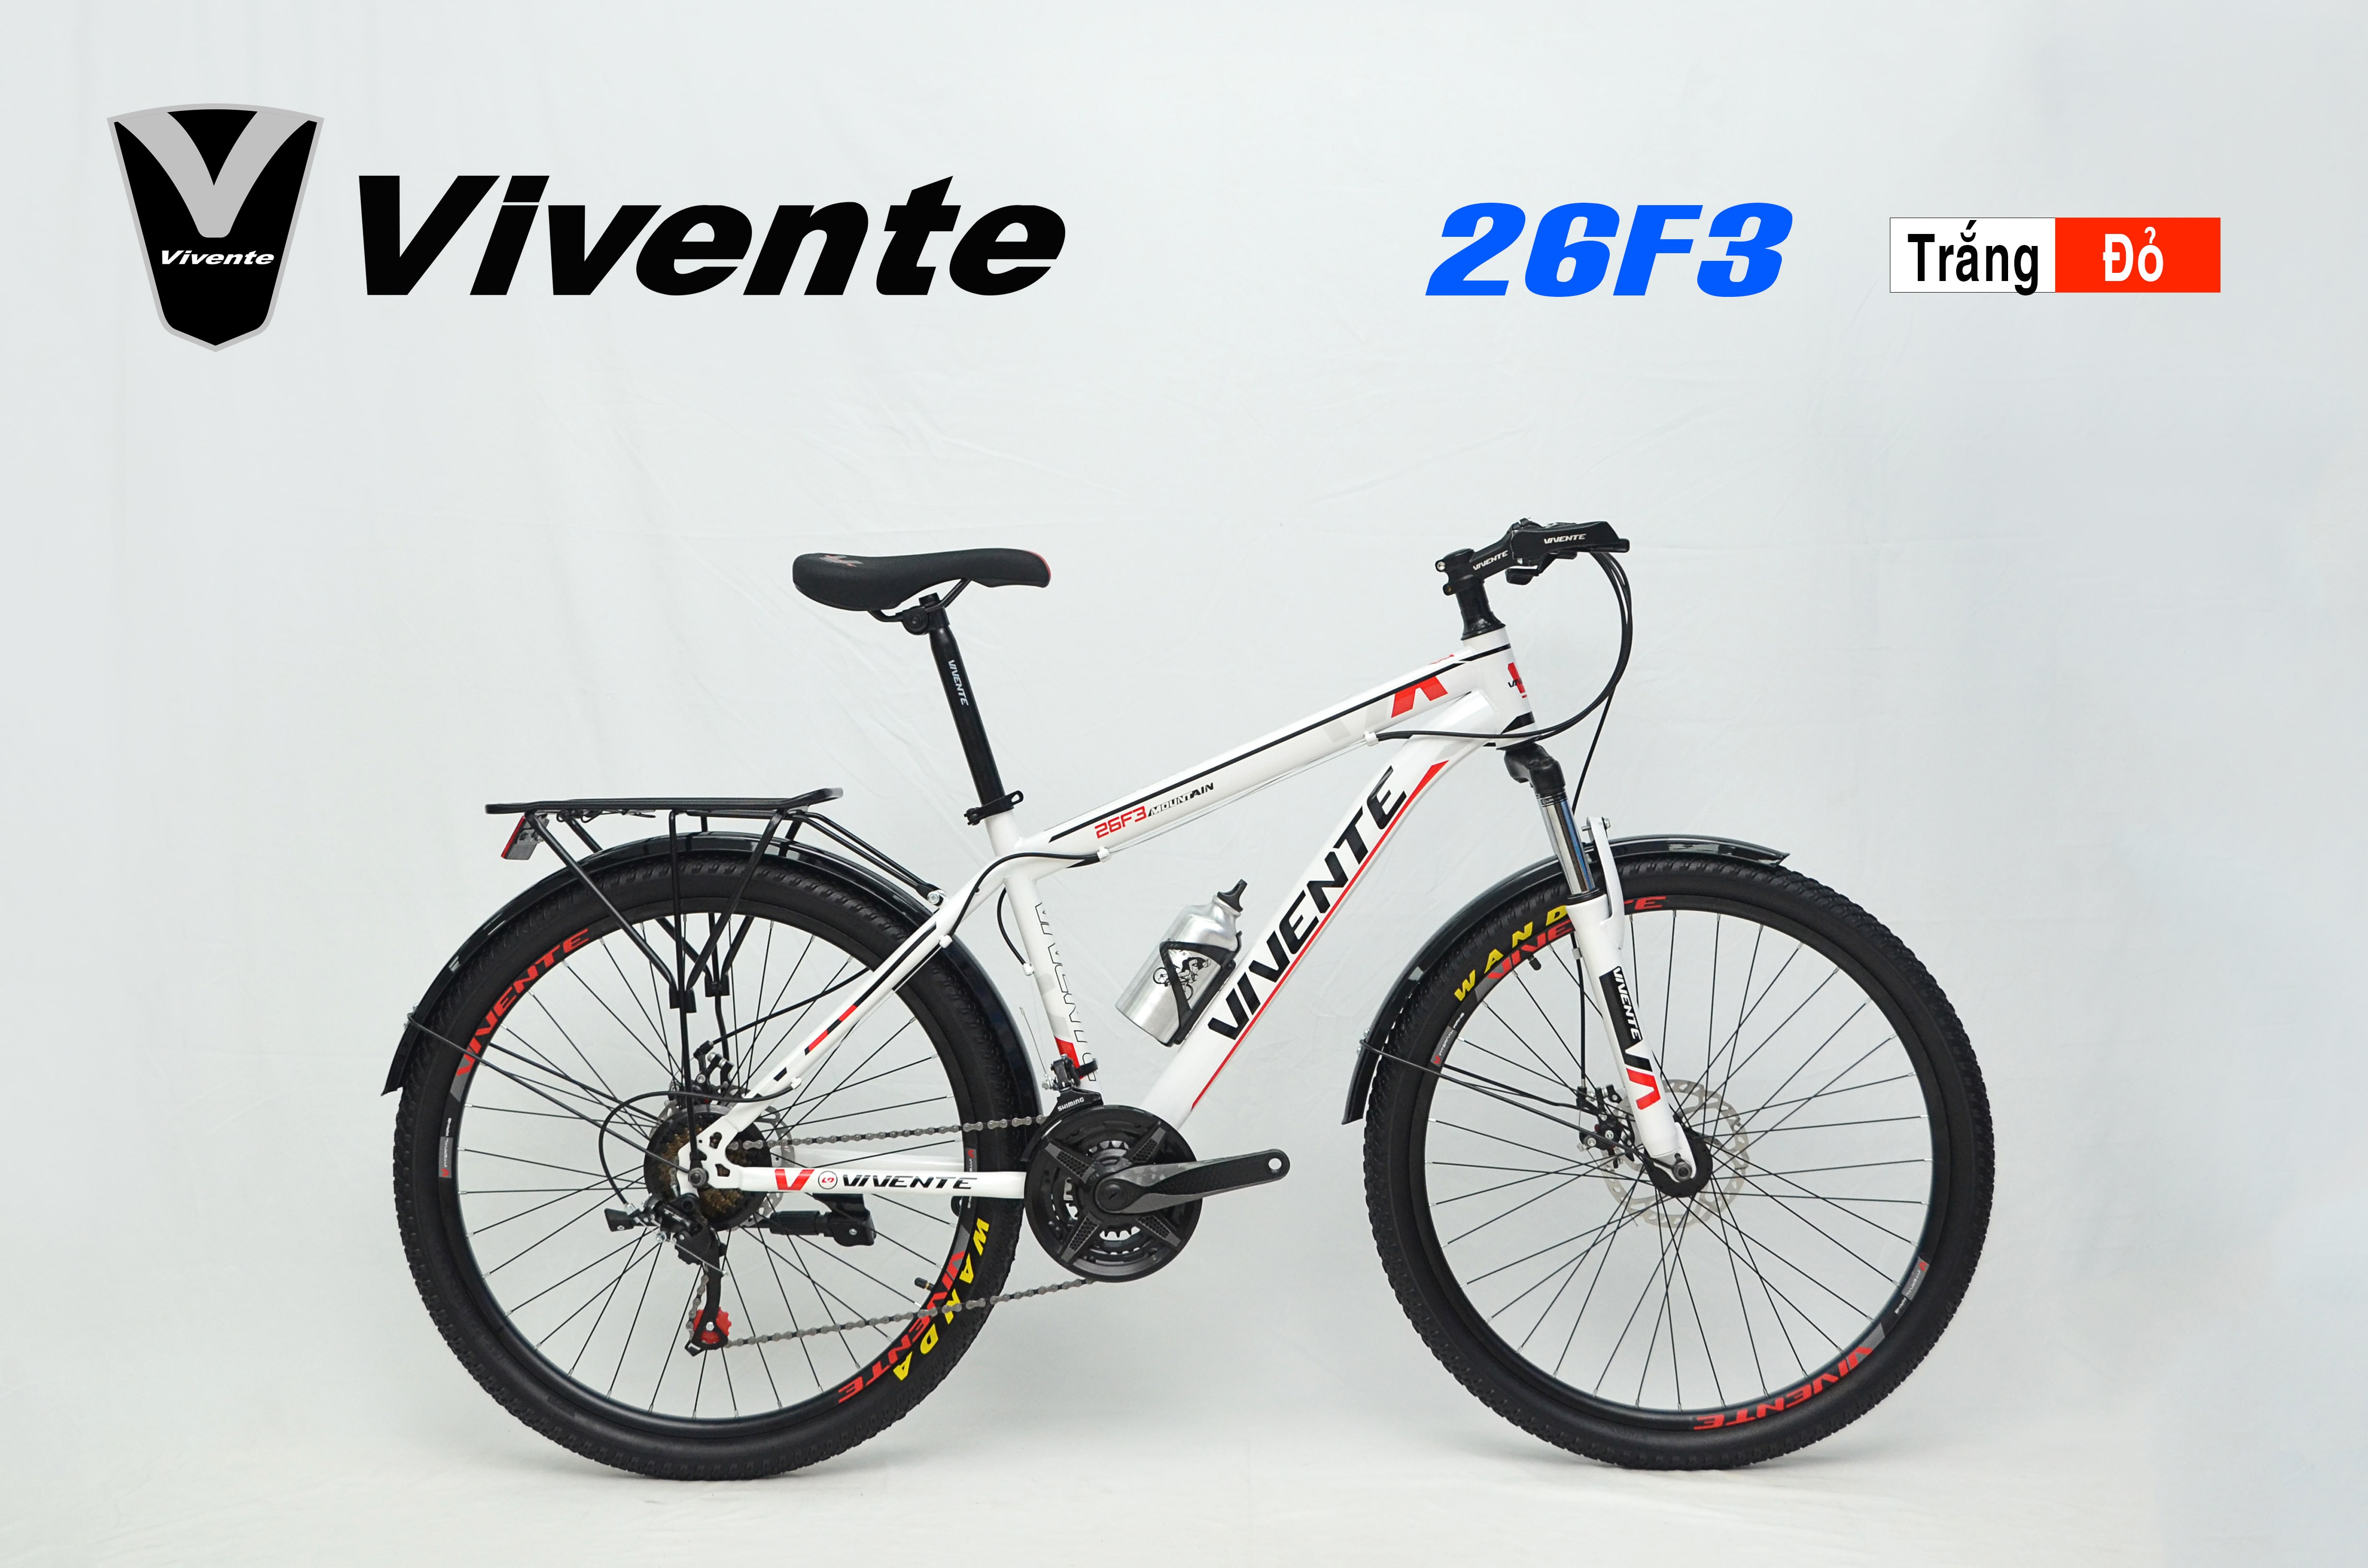 Xe đạp địa hình VIVENTE 26F3 là một lựa chọn hoàn hảo cho những người yêu thích địa hình khó khăn. Với hệ thống treo được chỉnh độ cao, khung nhôm nhẹ và bộ truyền động Shimano, chiếc xe đạp này sẽ trở thành người bạn đồng hành đáng tin cậy của bạn trong những cuộc phiêu lưu địa hình cực kỳ khó khăn.